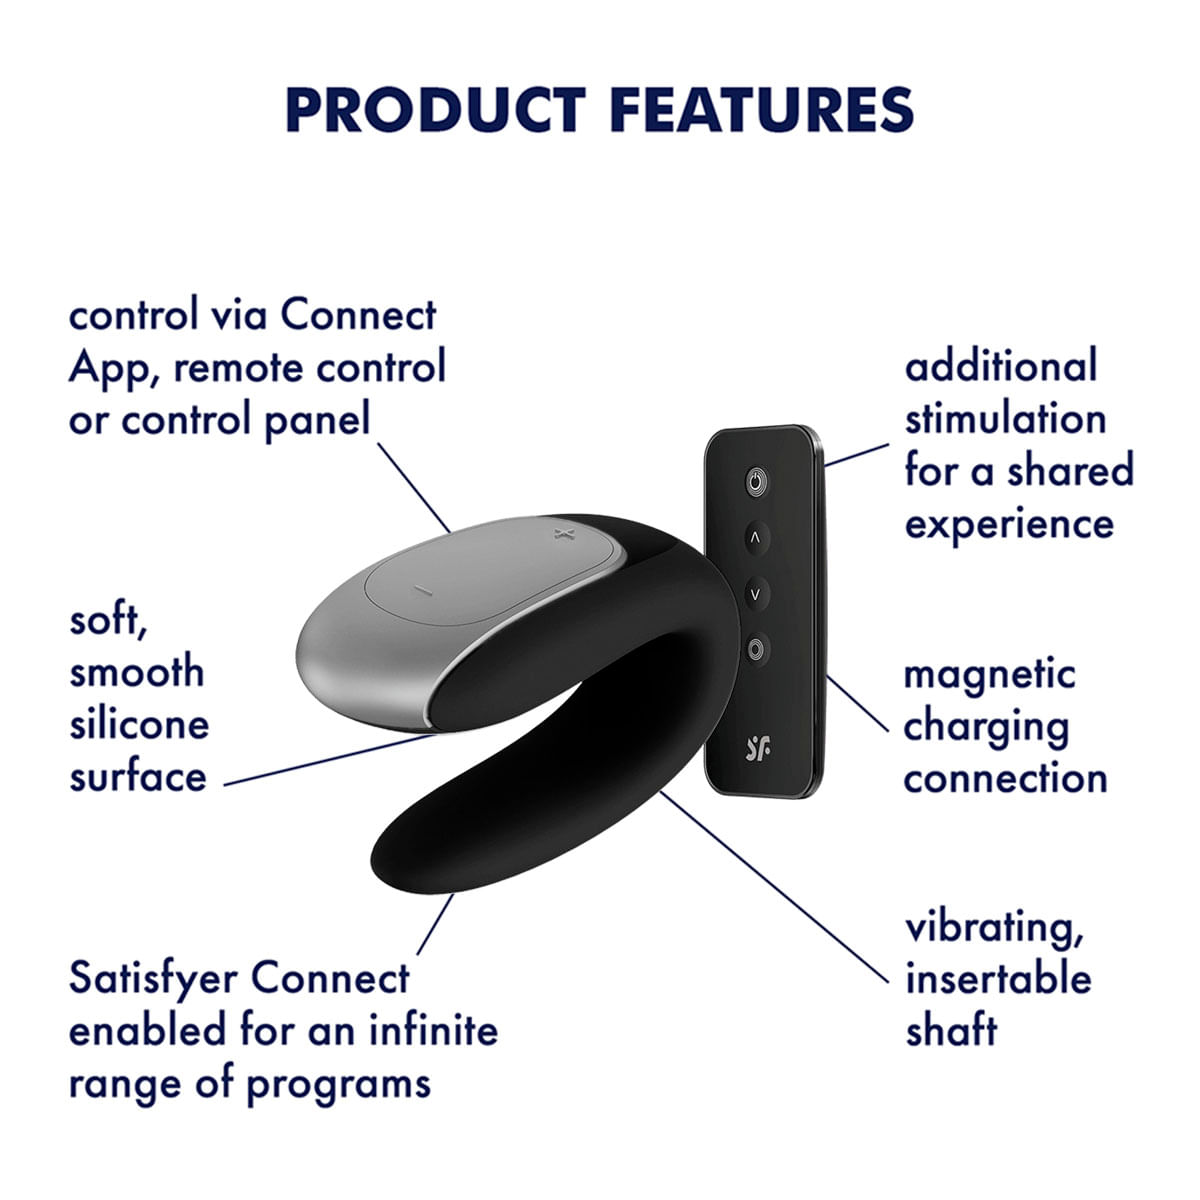 Satisfyer Double Fun Vibrador para Casal Bluetooth com 10 Modos de Vibração e Controle Remoto